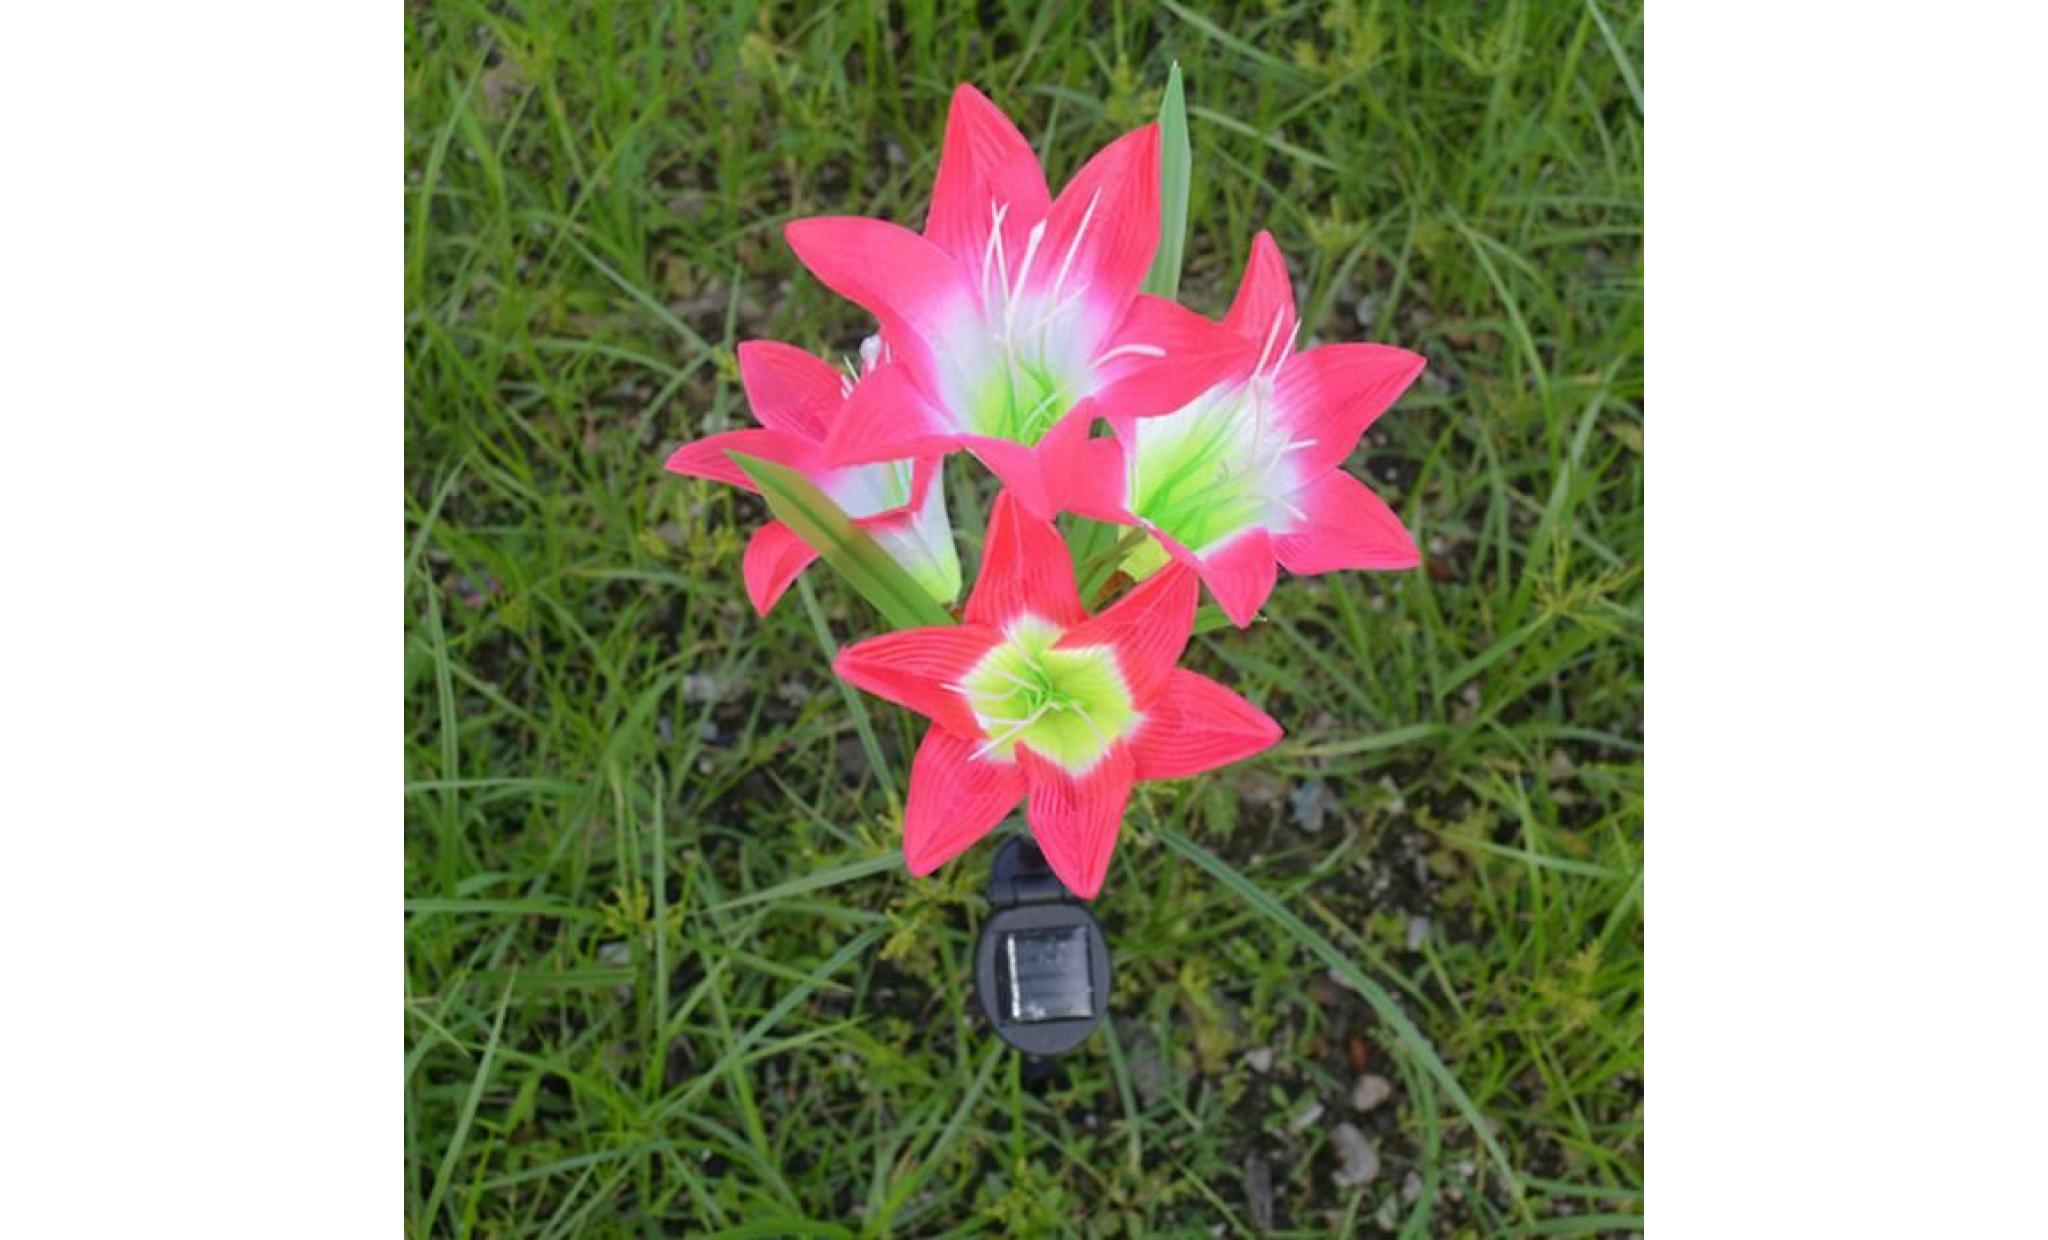 borne solaire 2 pcs fleur de lys jardin solaire actionné pieu lumières lumières fleurs artificielles led lumière #la 130 pas cher